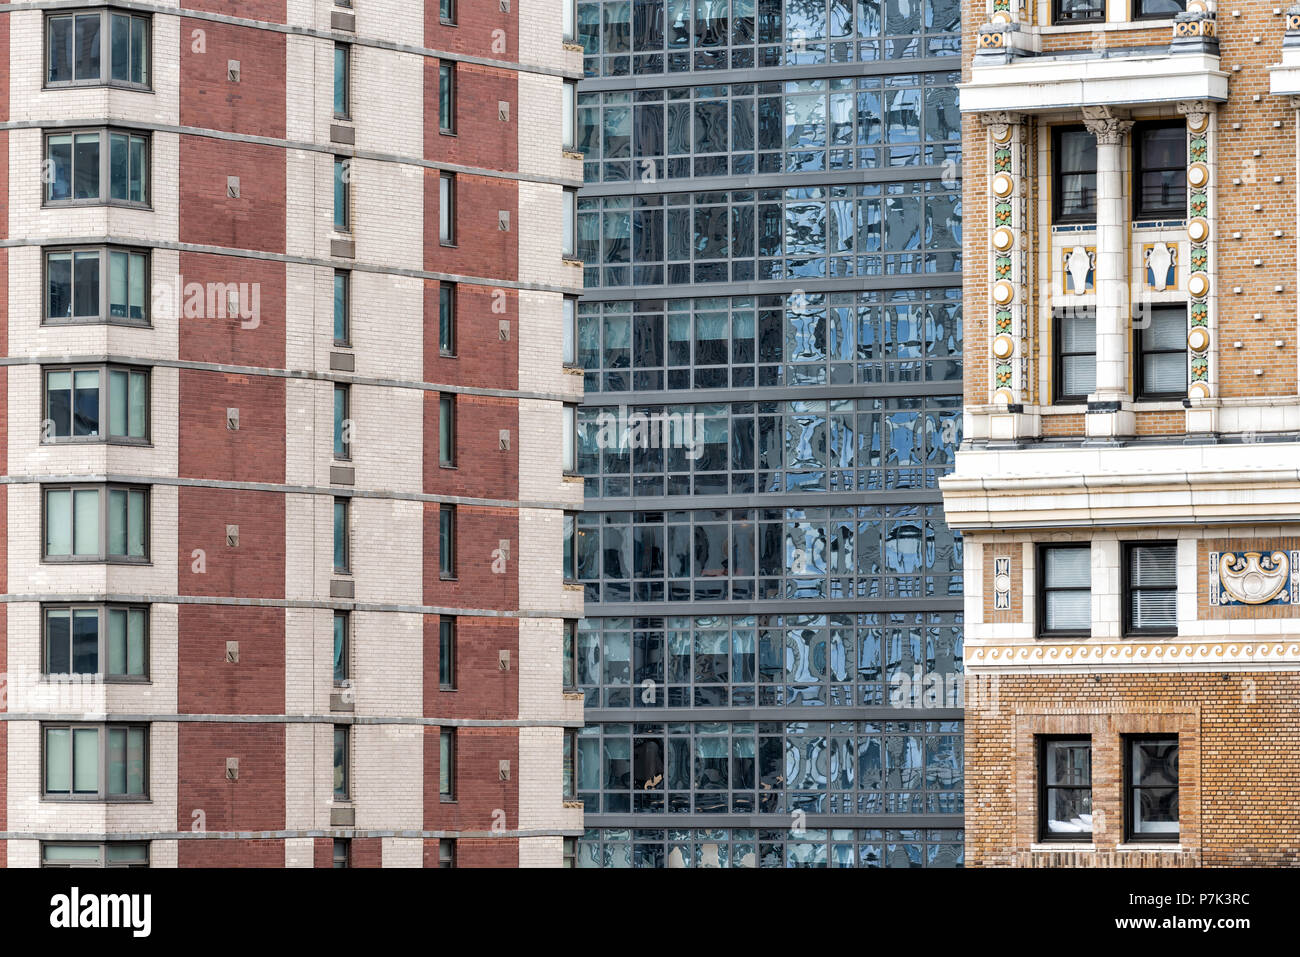 Nahaufnahme Muster der moderne Wolkenkratzer Gebäude Architektur in New York City NEW YORK CITY Luftbild durch Fenster, vertikale Linien, Windows Stockfoto